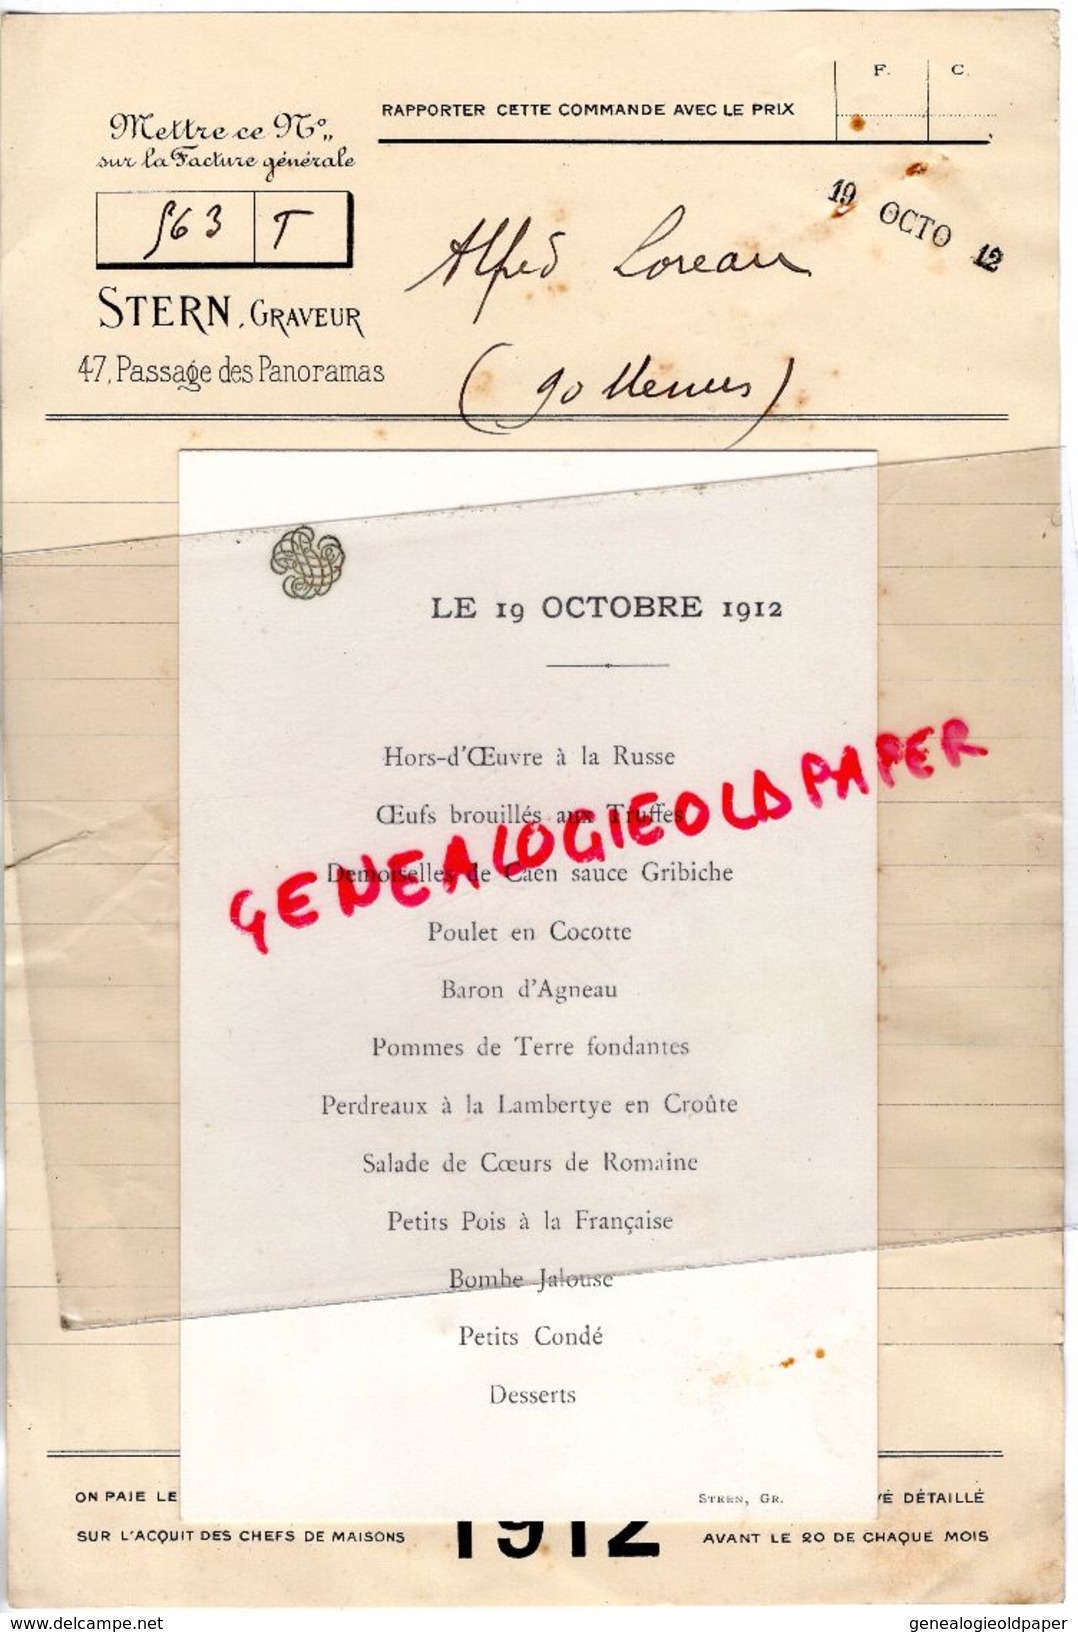 75- PARIS- COMMANDE CARTE MENU DE ALFRED LOREAU A STERN GRAVEUR -47 PASSAGE PANORAMAS- 1912 IMPRIMERIE - Printing & Stationeries